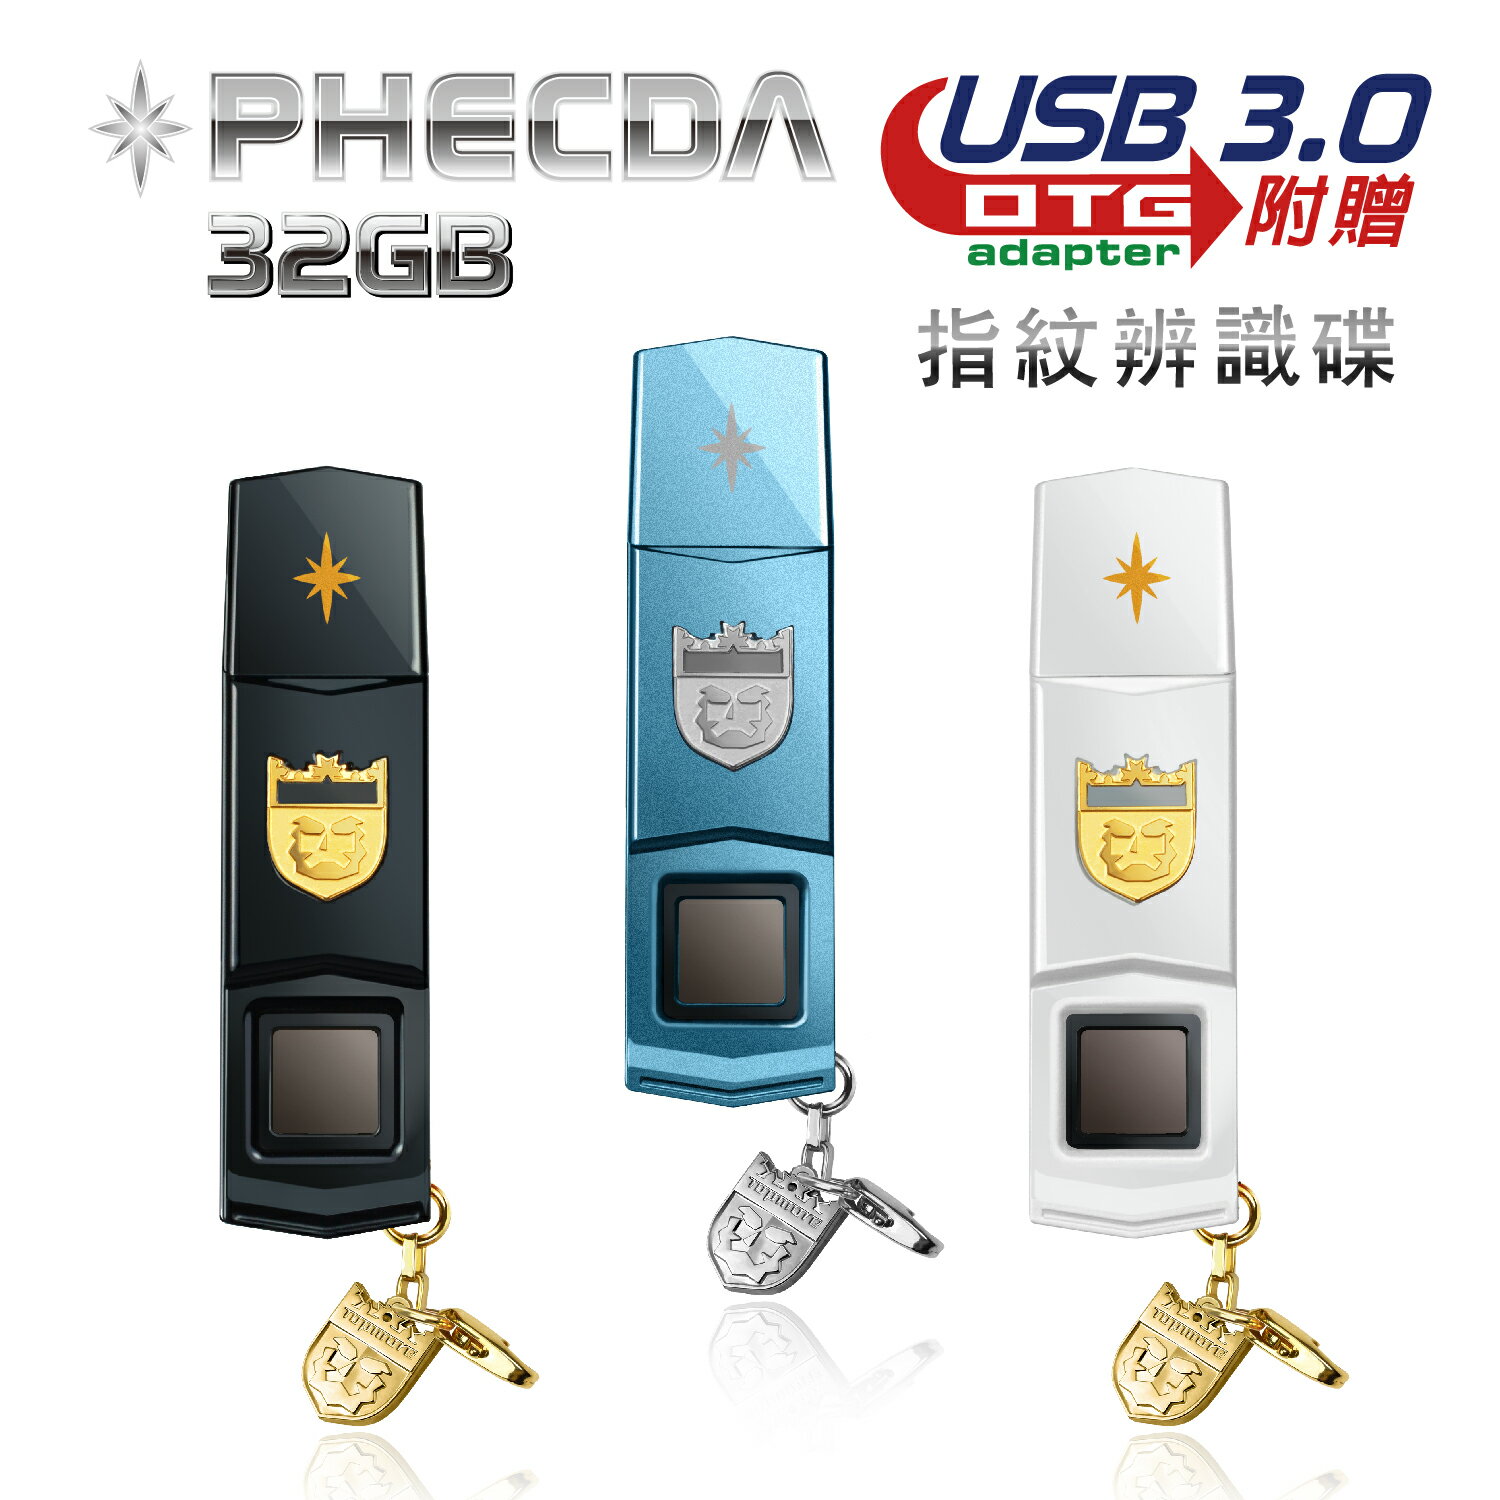 達墨TOPMORE Phecda 指紋辨識碟 USB3.0 32GB  